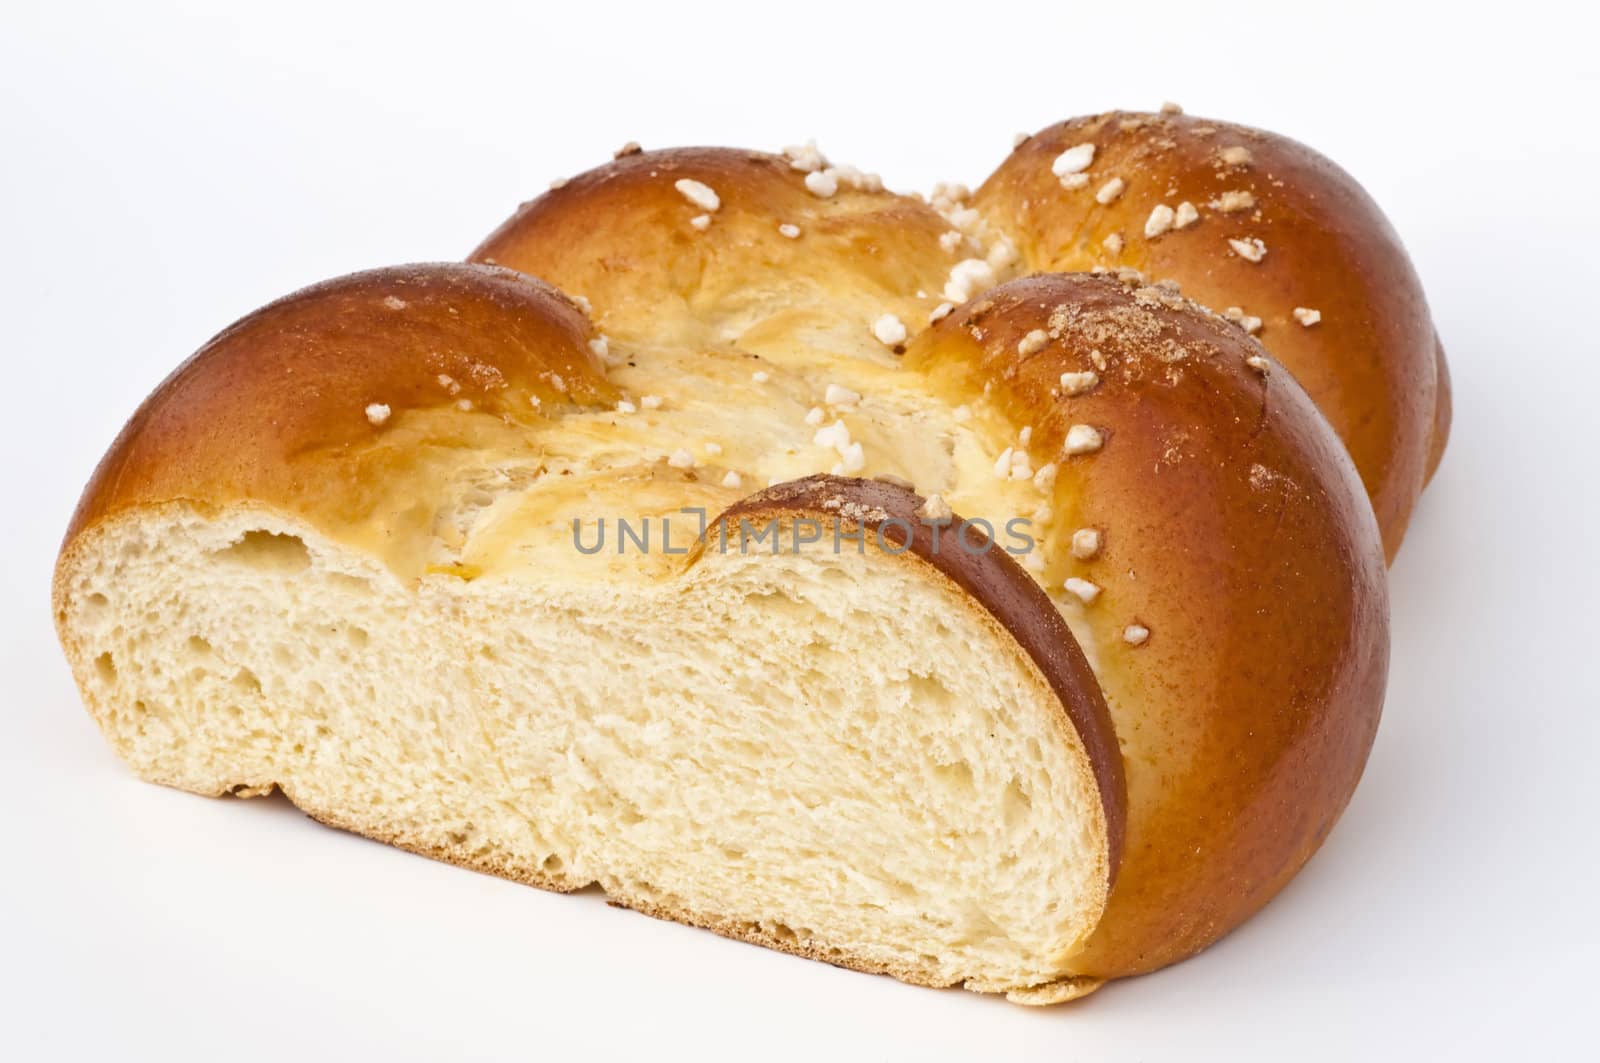 braided yeast bun by Jochen